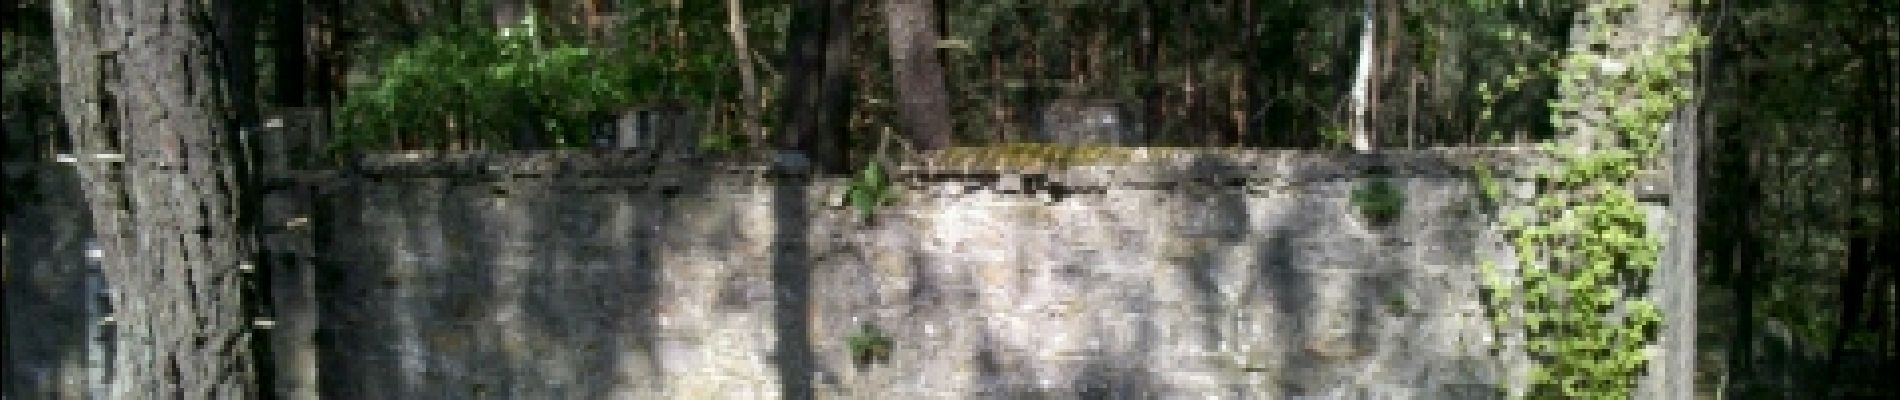 POI Fontainebleau - 10 - Rocher de la Salamandre - Photo